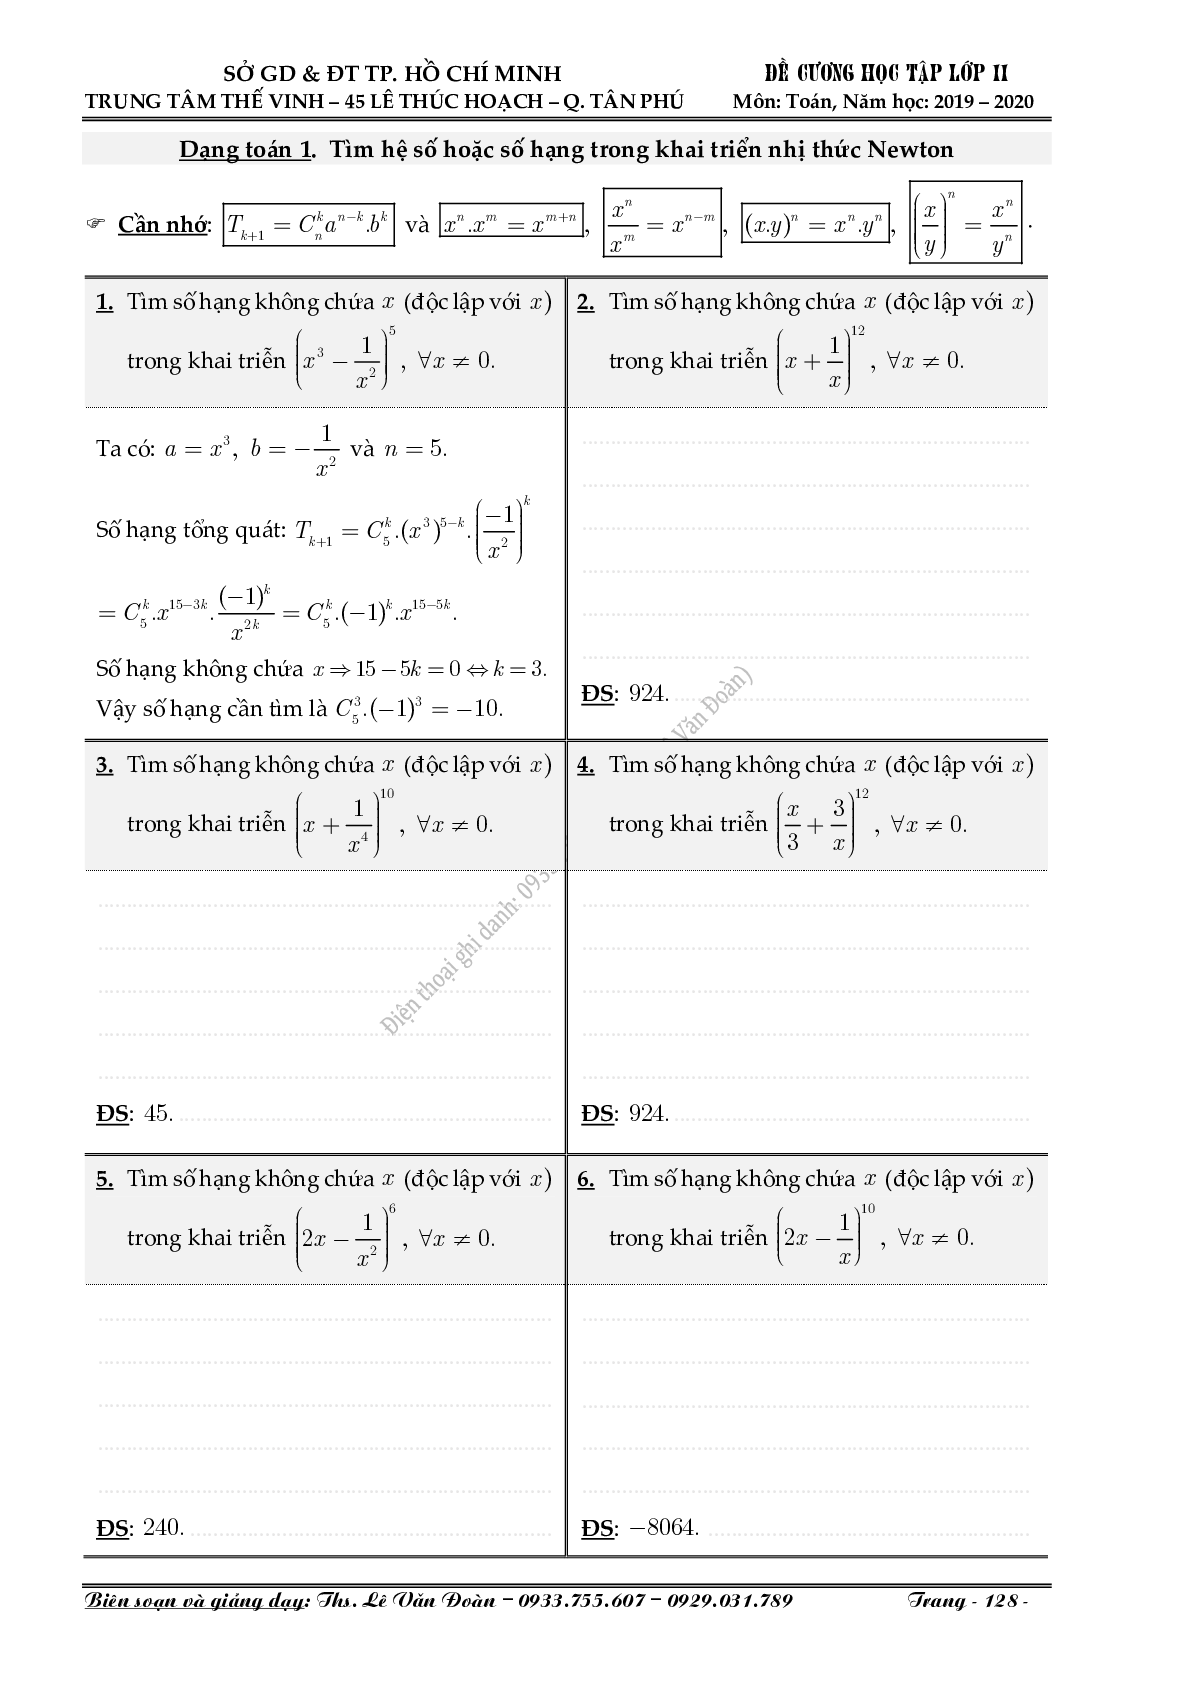 Chuyên đề nhị thức Newton (Niu-tơn) (trang 2)